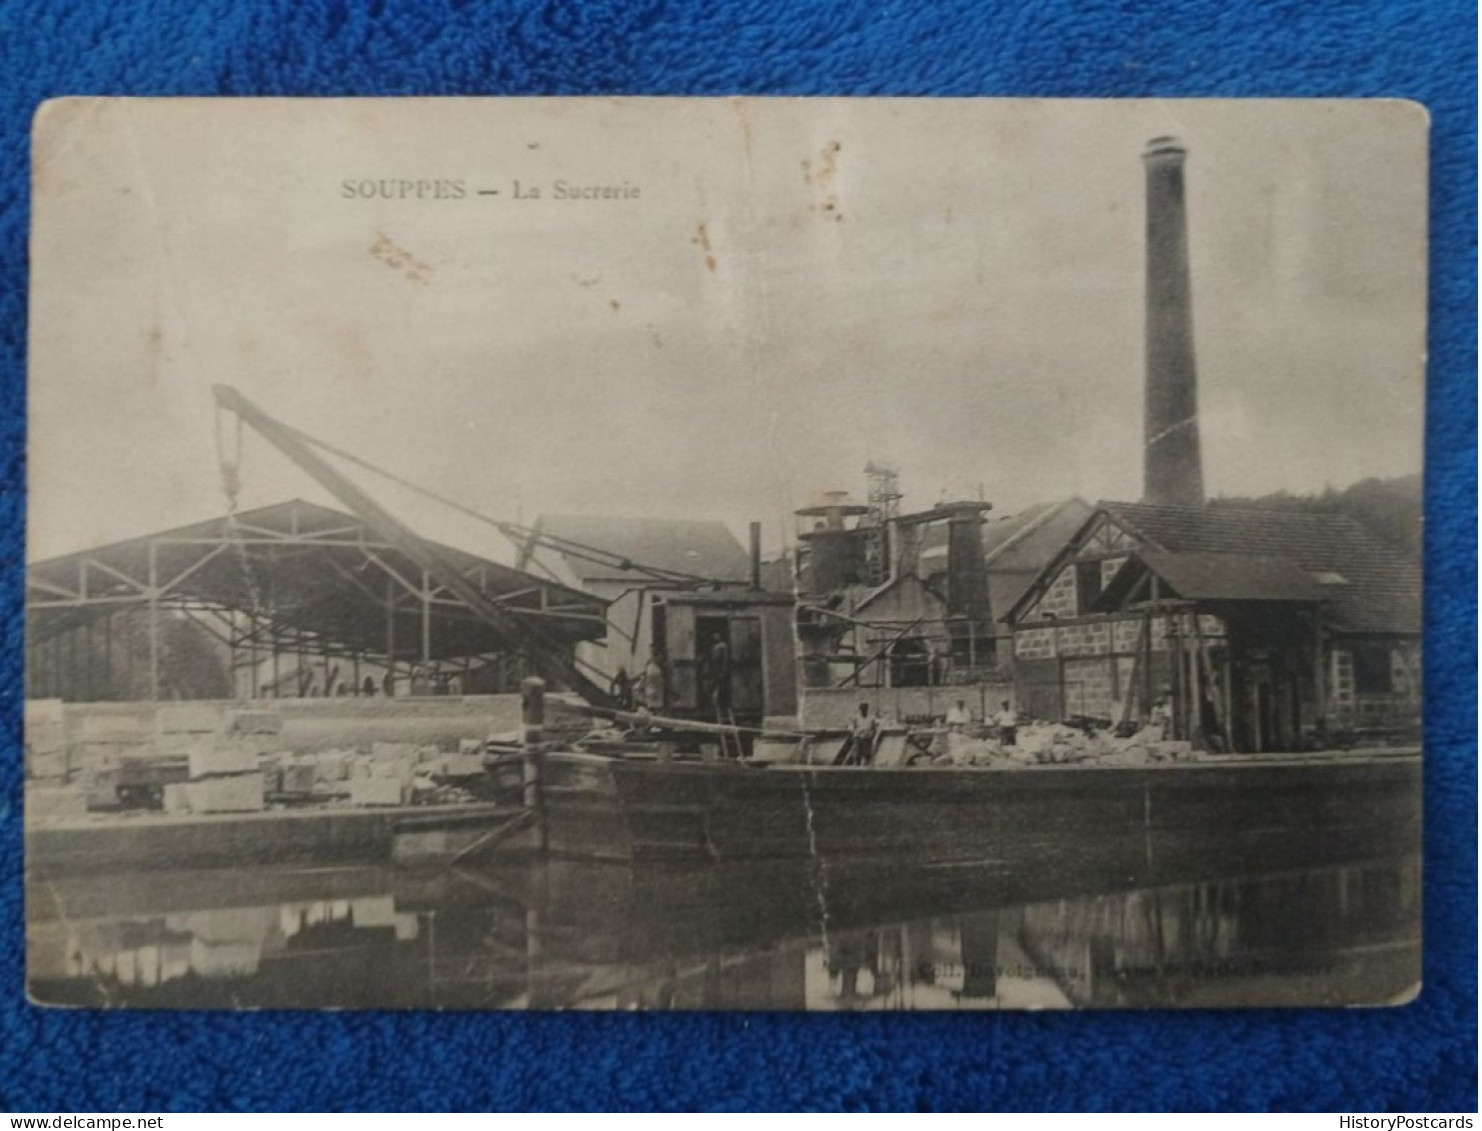 Souppes, La Sucrerie, Zuckerfabrik, Seine-et-Marne, 1910 - Souppes Sur Loing